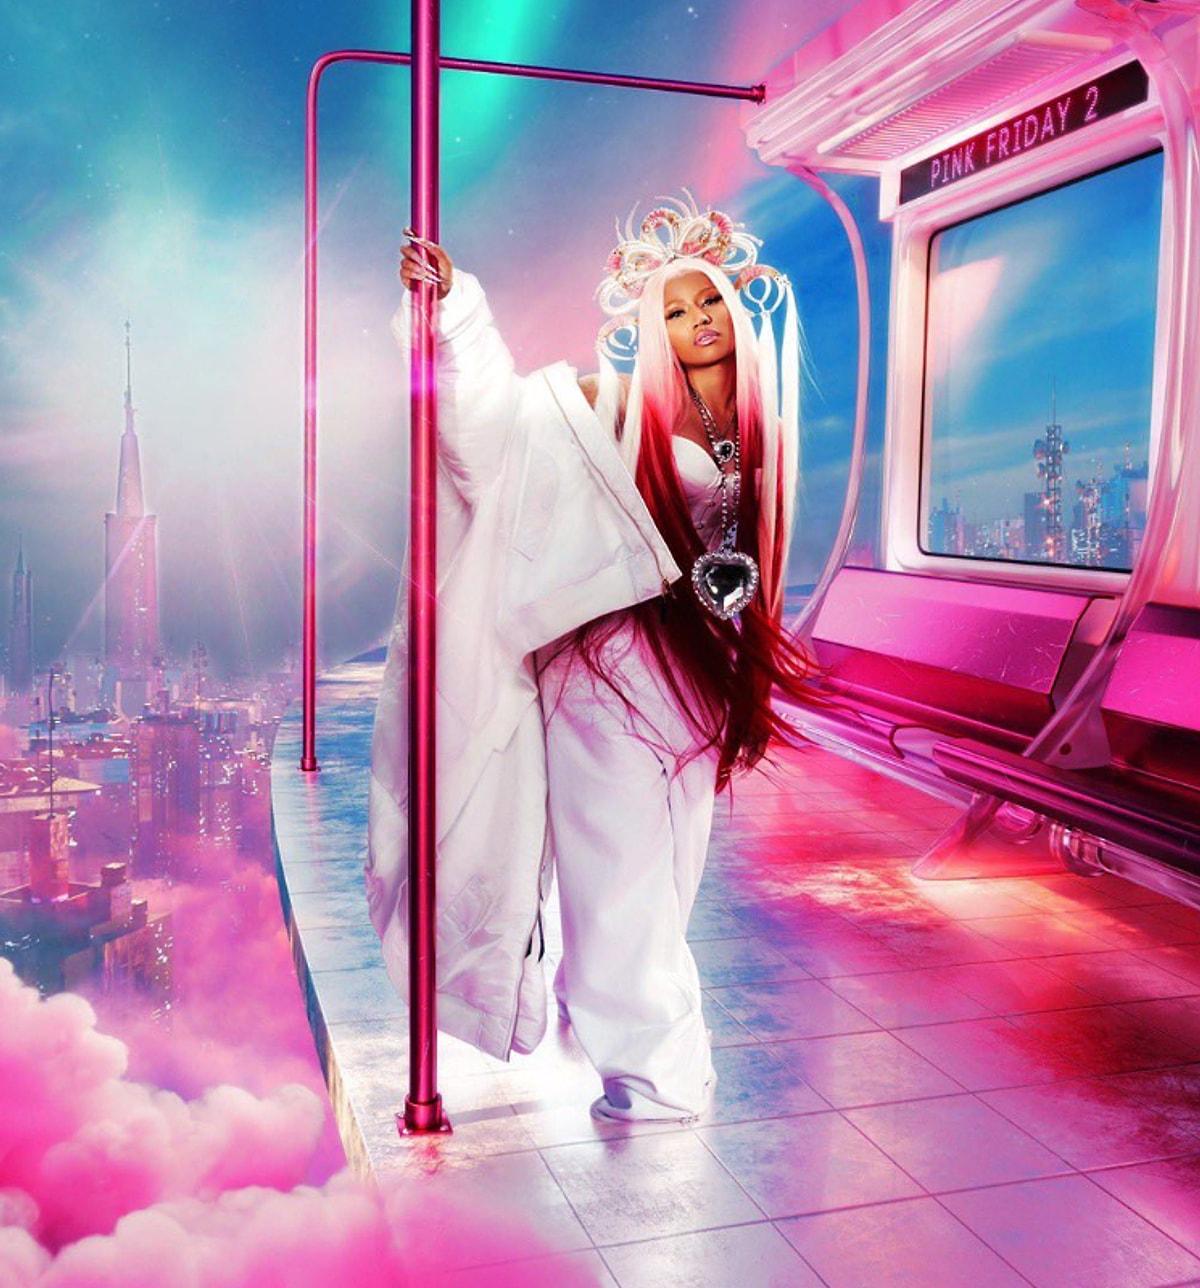 14. Nicki Minaj